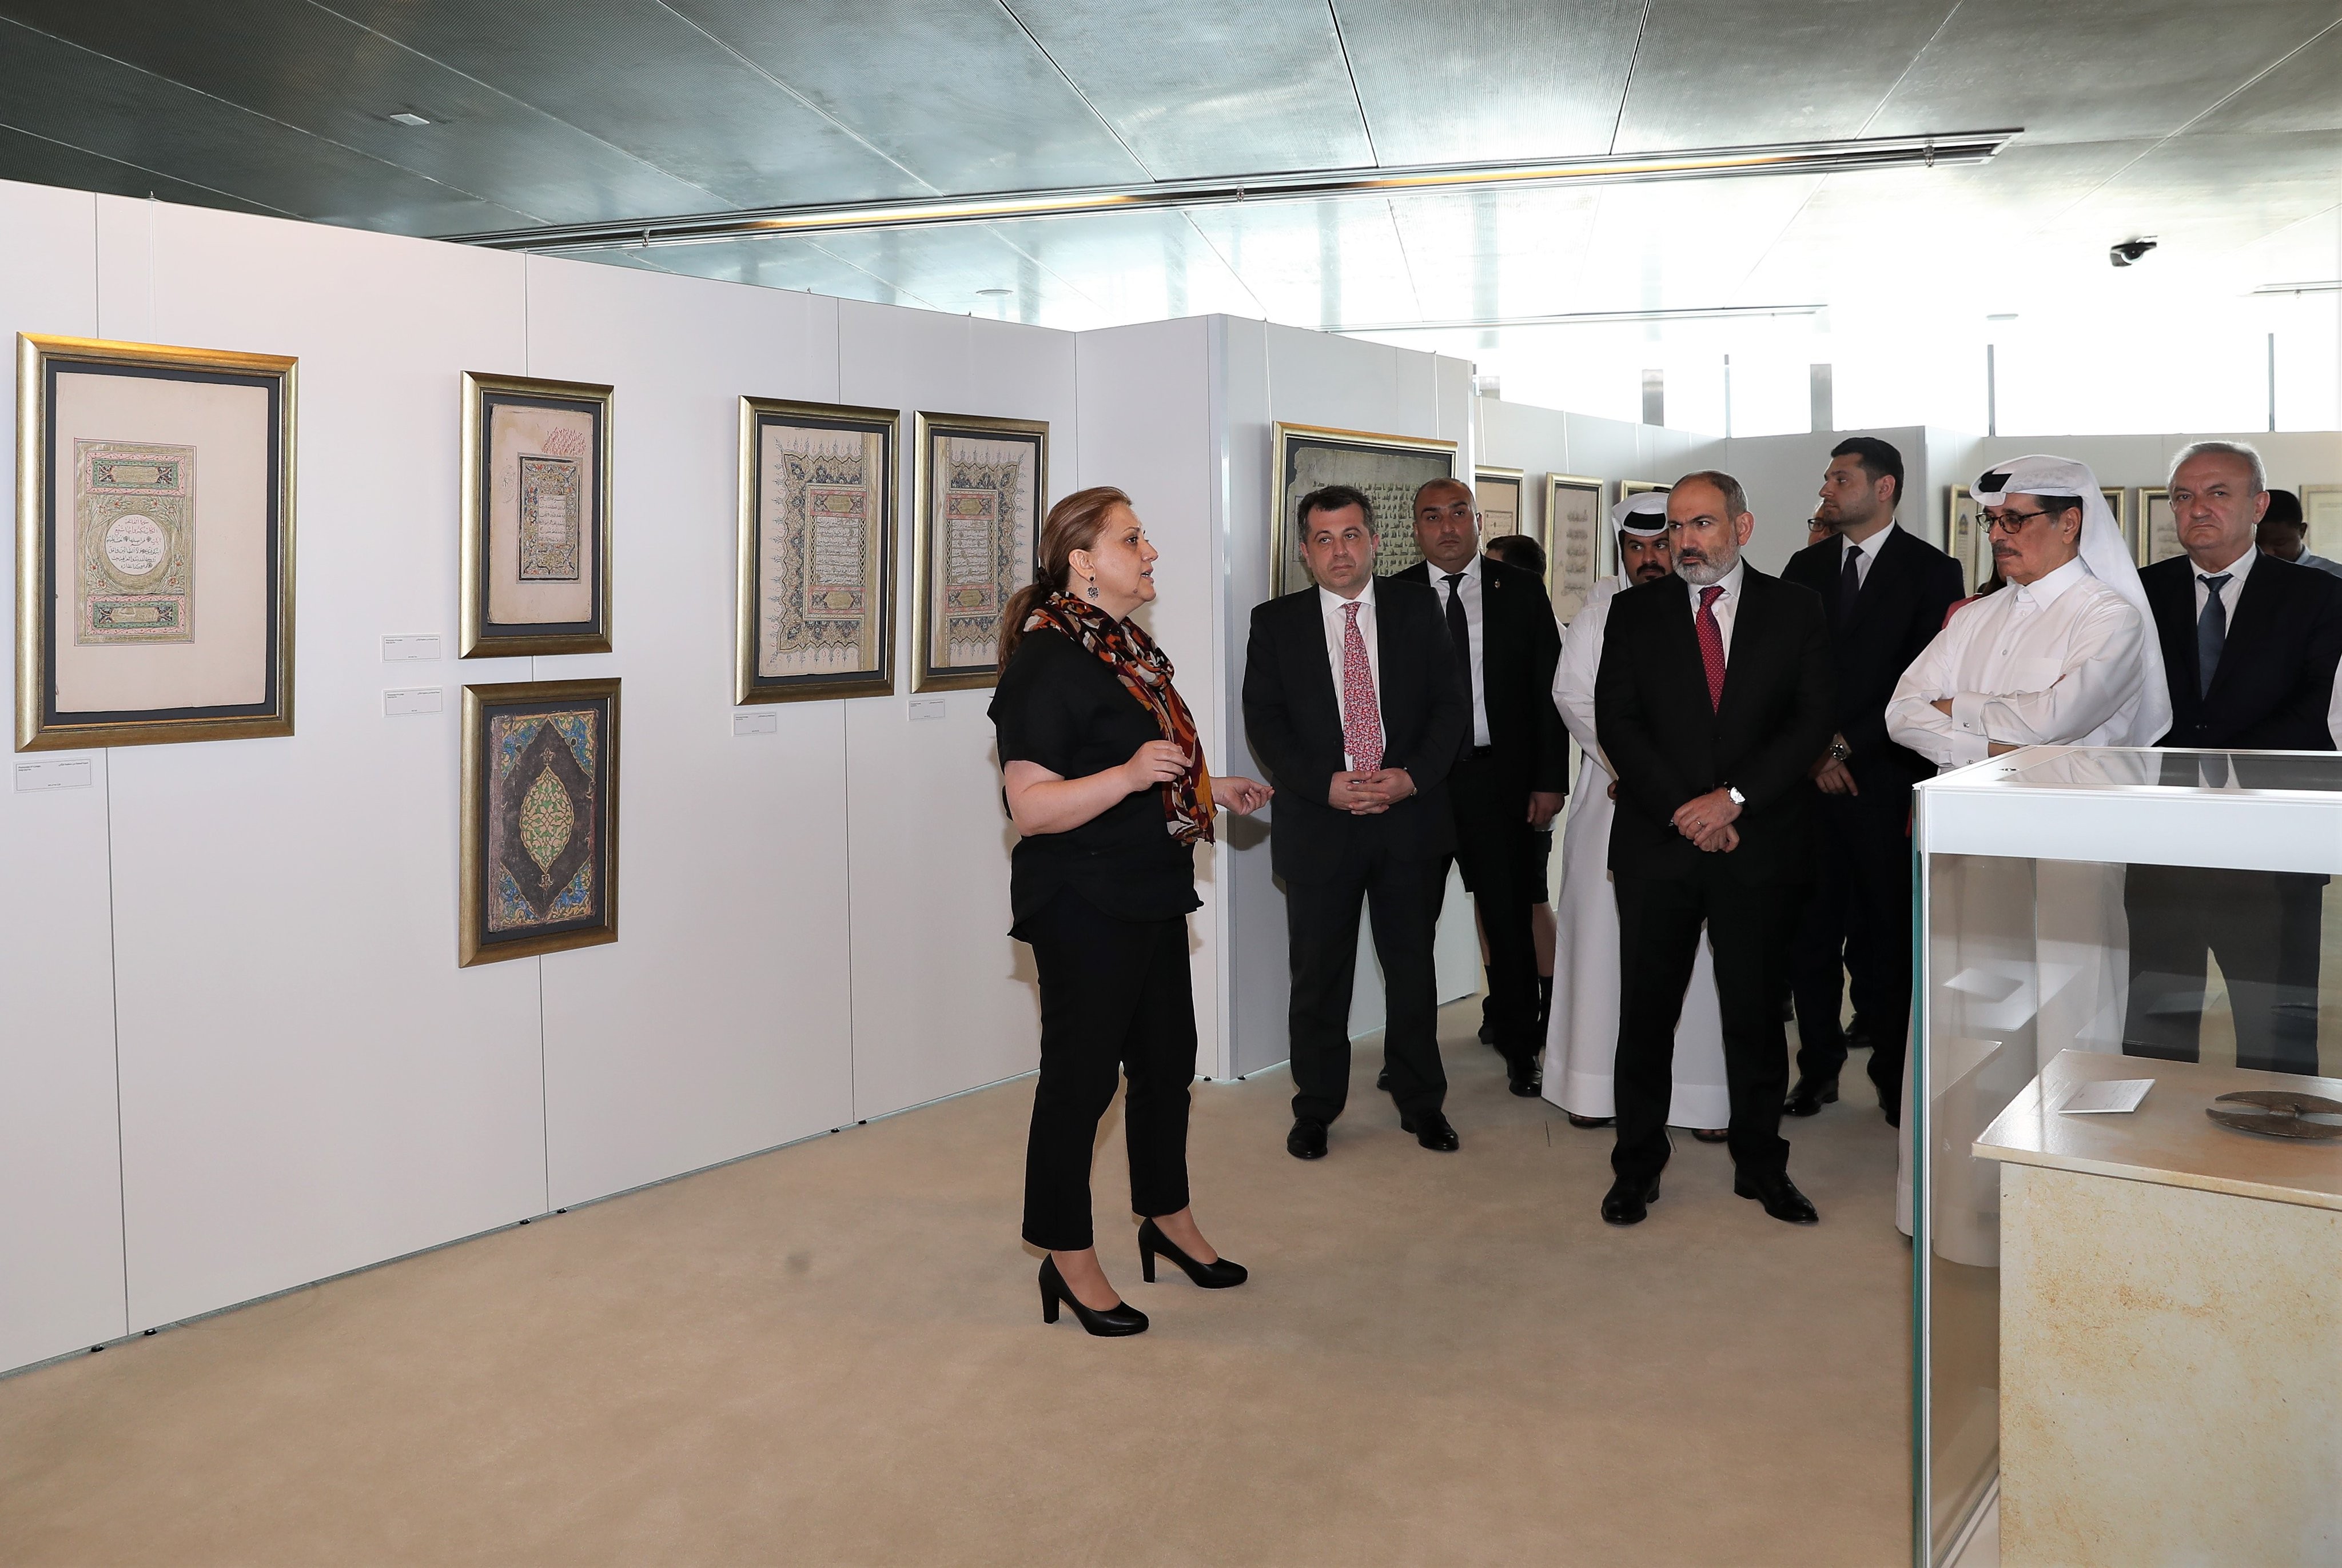 افتتاح معرض "رسائل عربية من أرمينيا" في مكتبة قطر | شبكة مرسال قطر